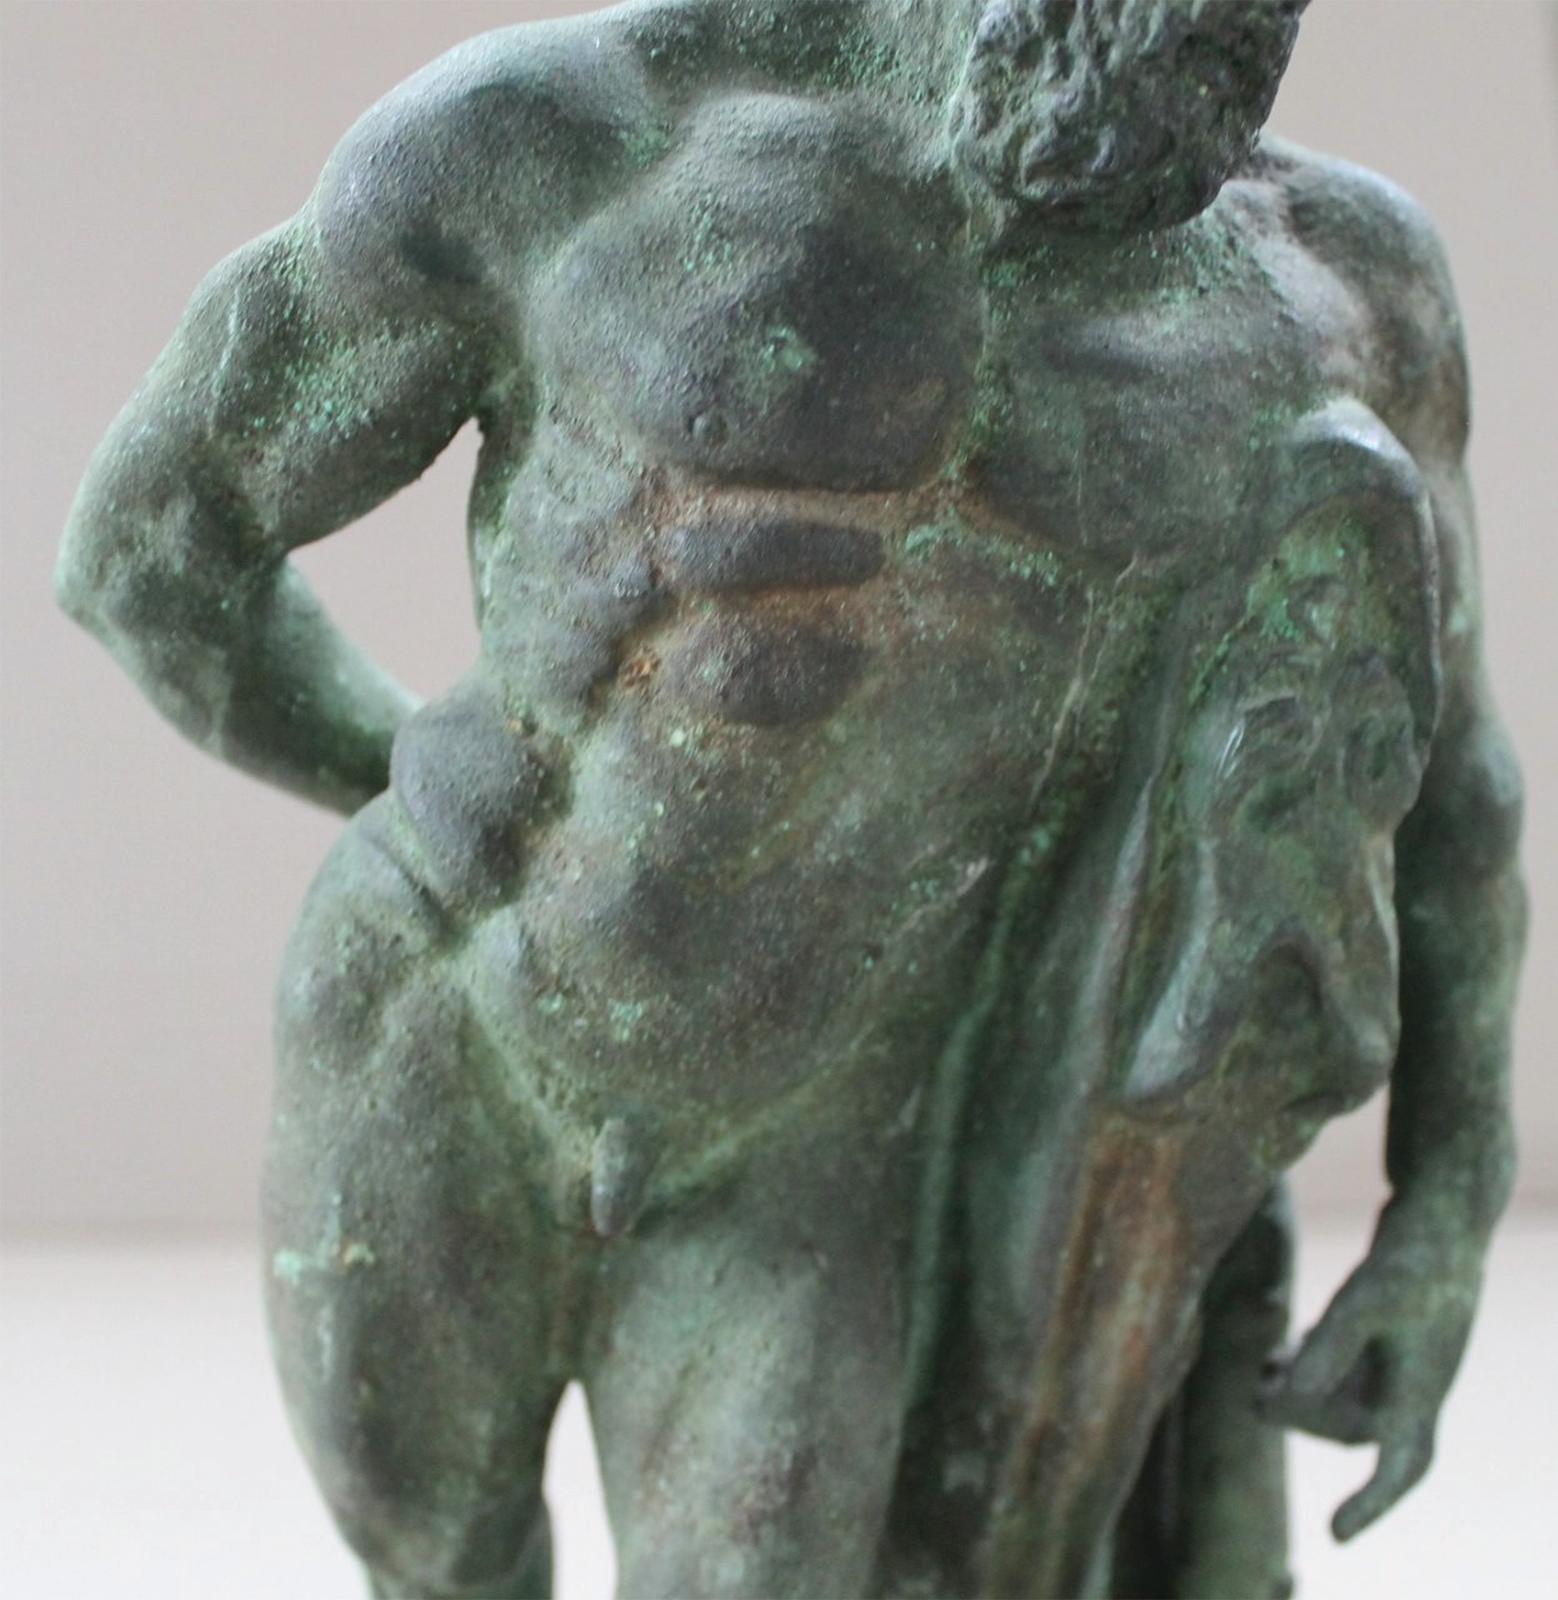 Bronzeskulptur aus dem späten 18. Jahrhundert nach dem Herkules von Farnese
Grand-Tour-Bronze mit feiner Krustenpatina auf einem späteren Holzsockel
16 in. h., insgesamt
12,5 in. h., Bronze 
3.5 in. h., Basis

Der Herkules von Farnese ist eine